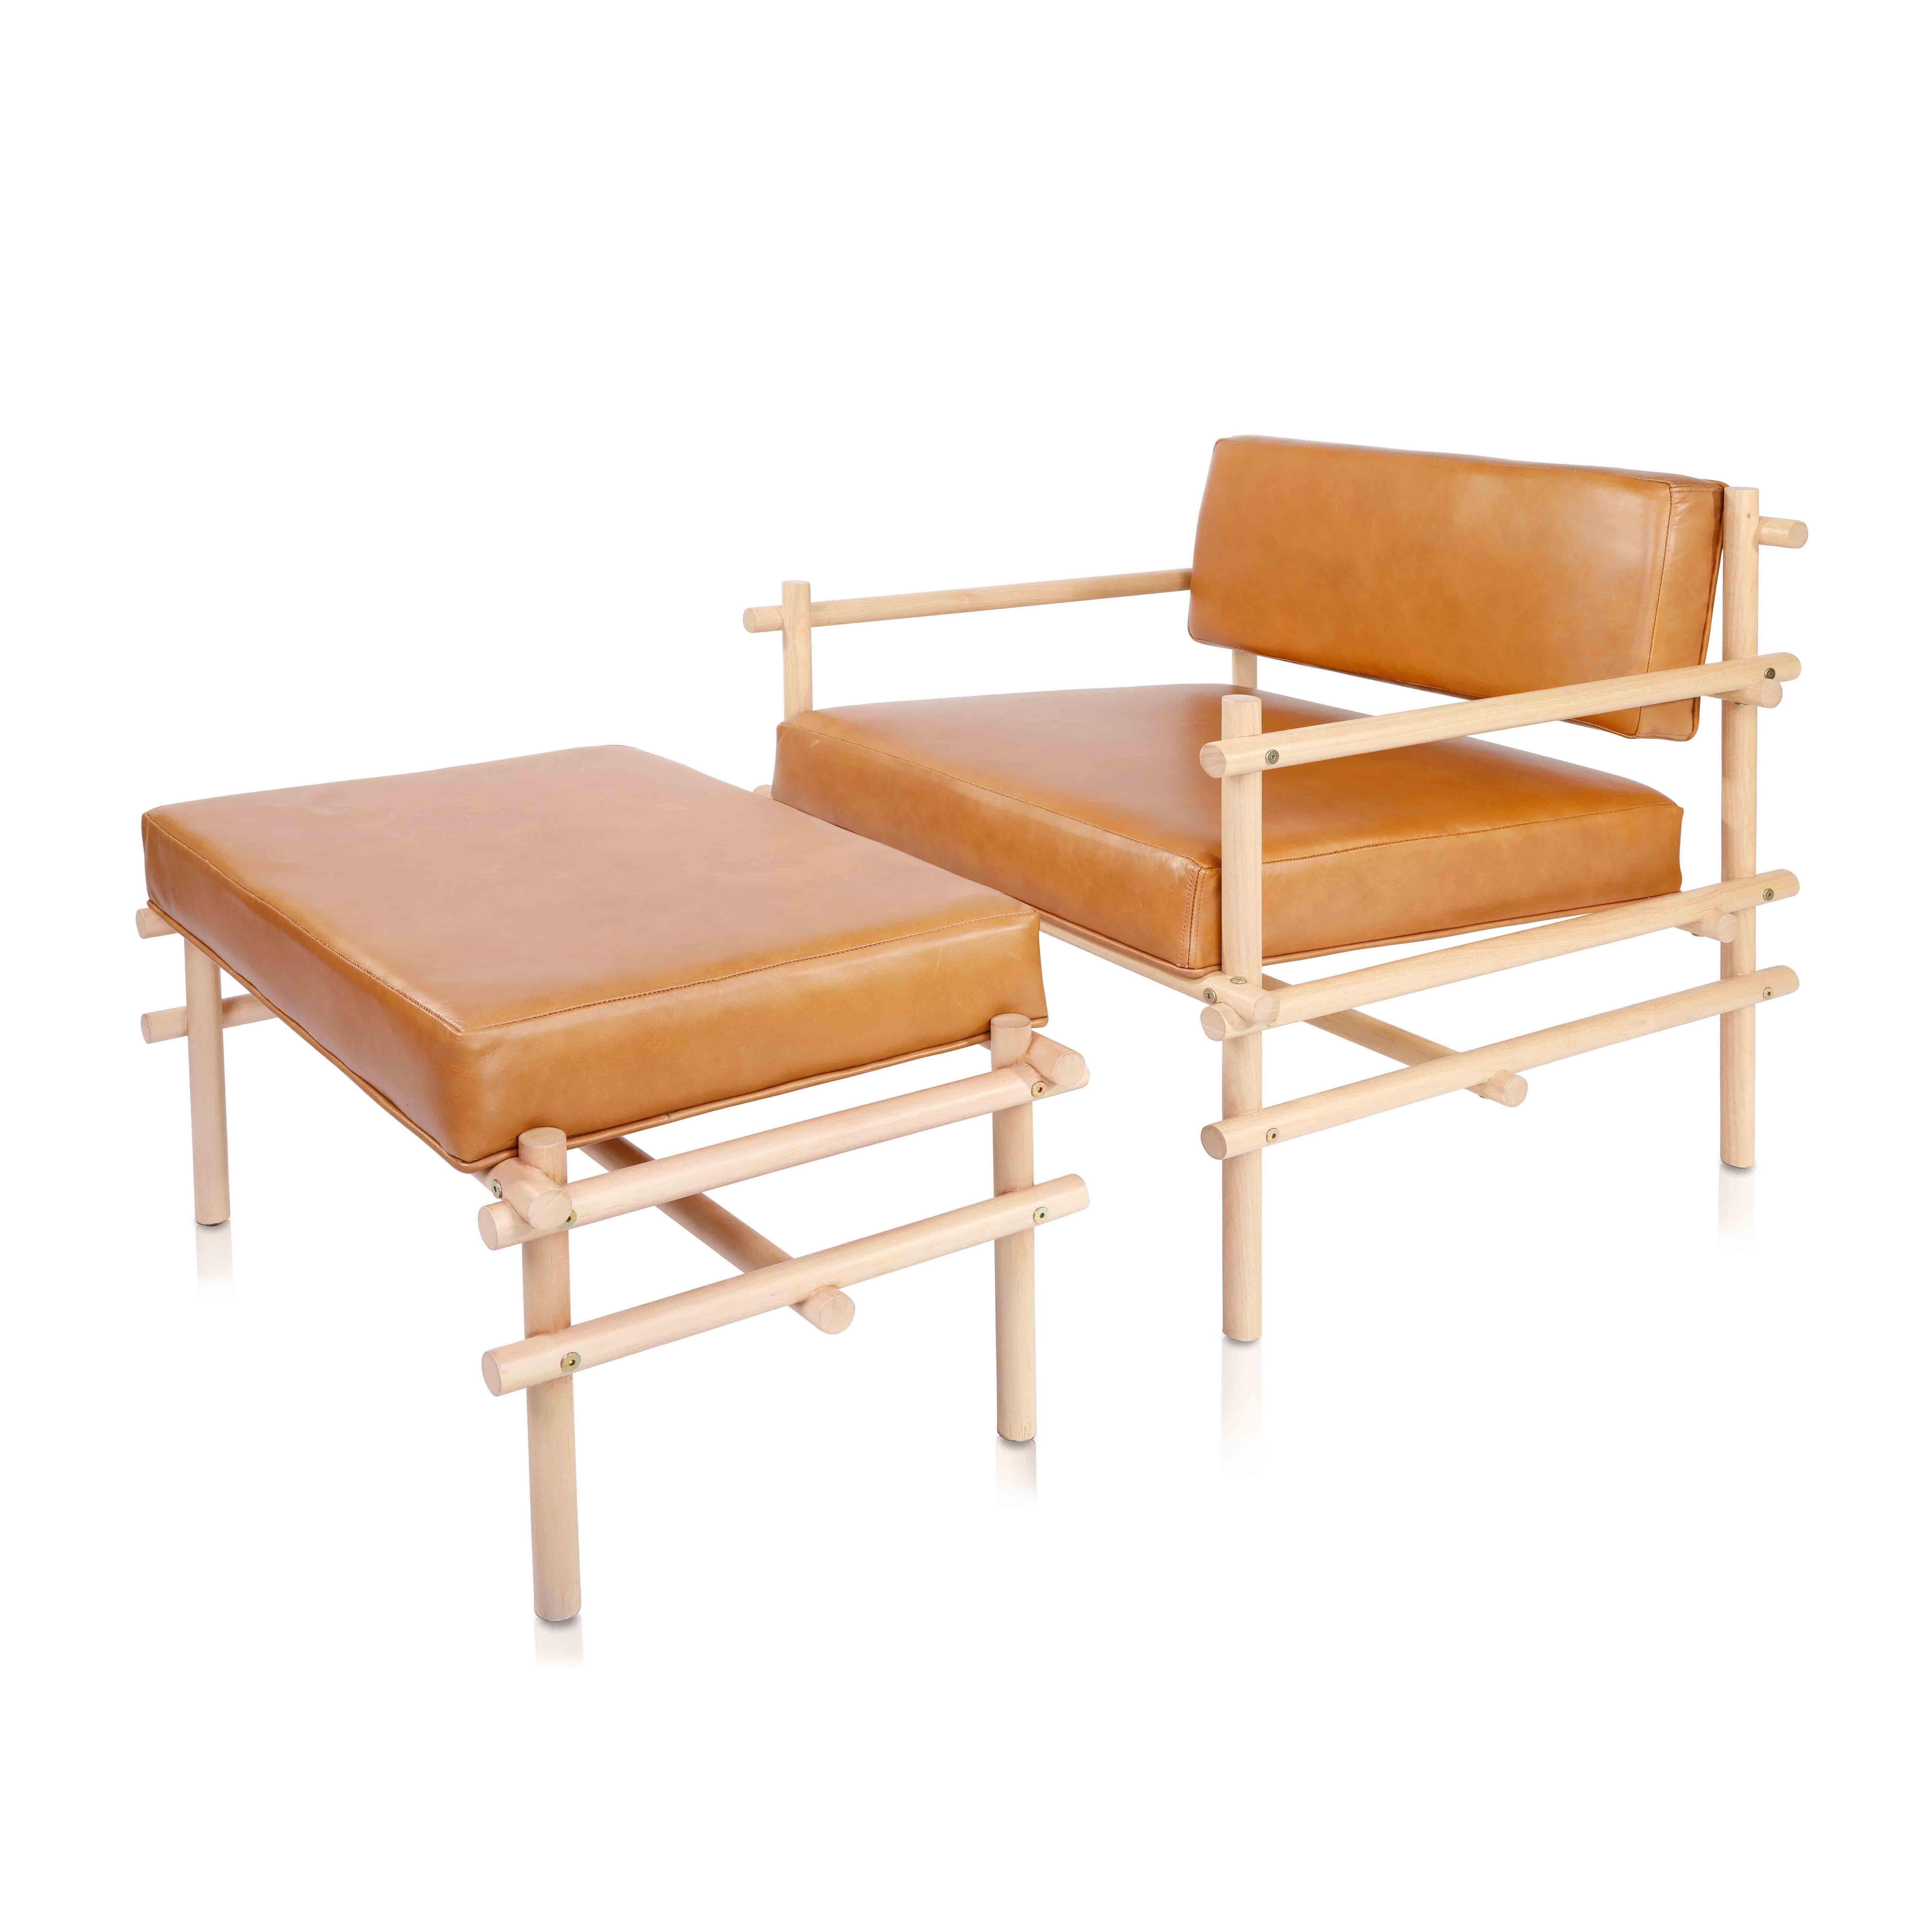 De la collection Pipa, nous avons lancé le fauteuil, avec le même principe de rationalisation industrielle et de simplicité constructive utilisé par la chaise qui a lancé cette ligne. En bois massif de Tauari, un bois brésilien de haute performance